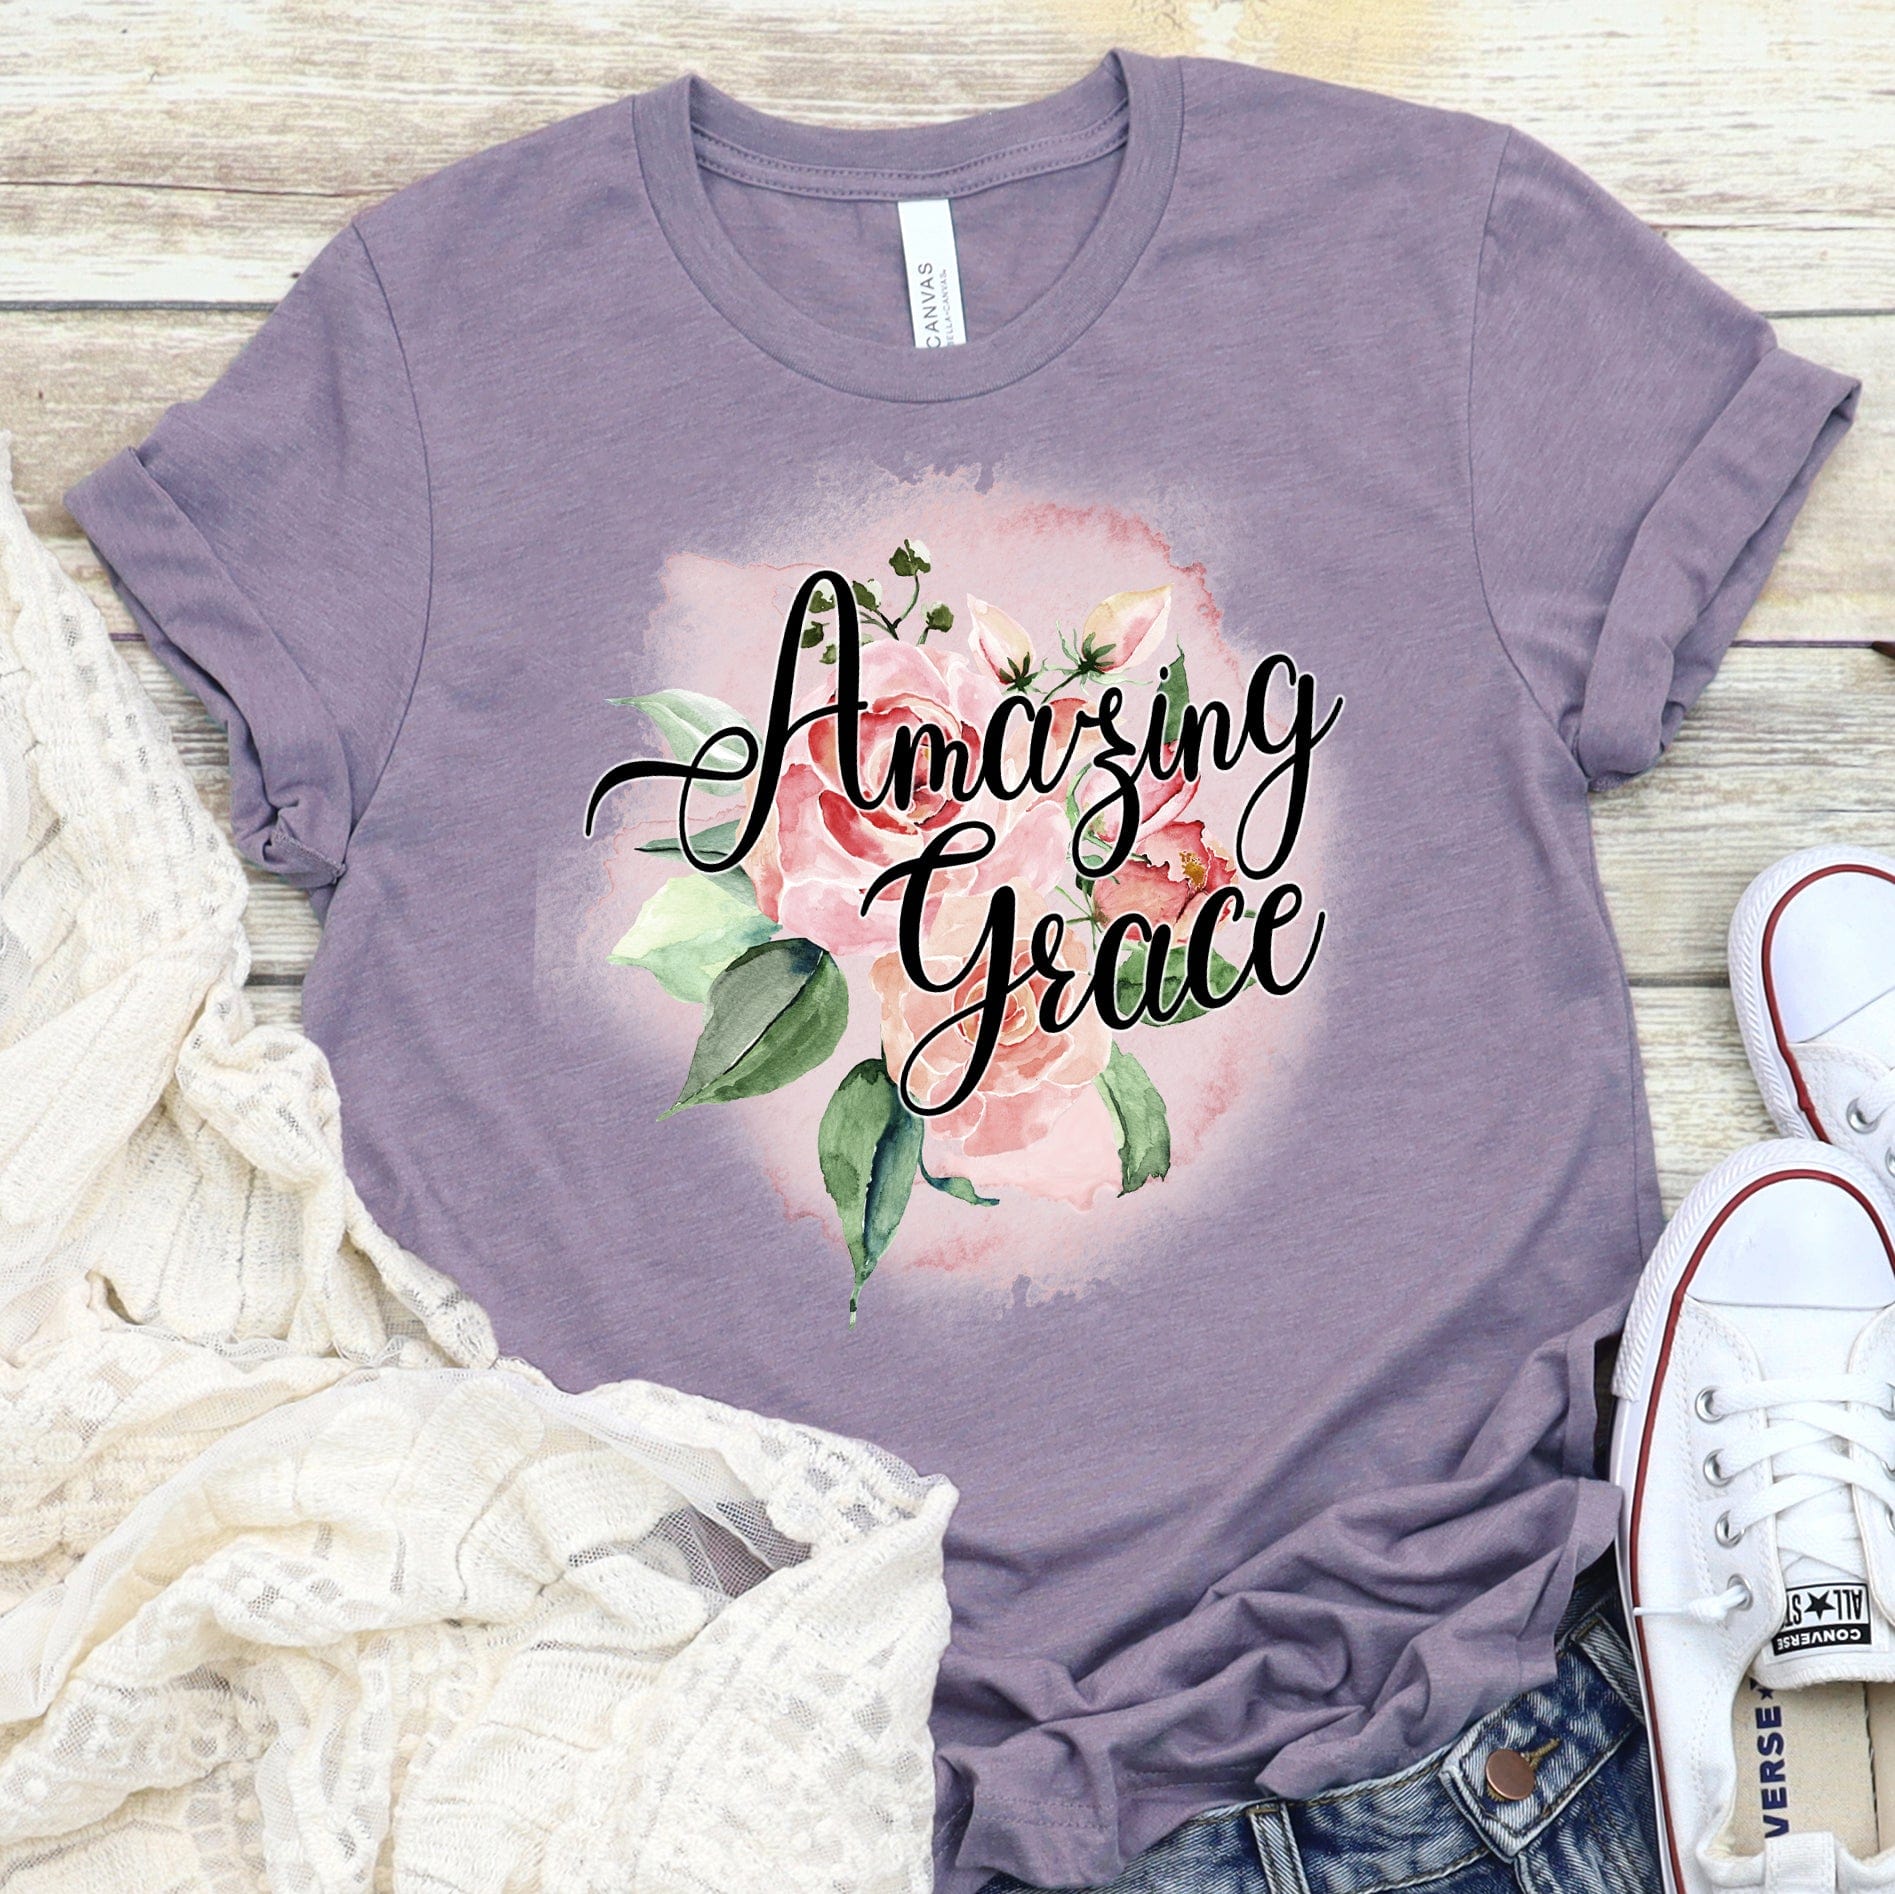 Amazing Grace Rose T Shirts For Women - Women's Christian T Shirts - Women's Religious Shirts